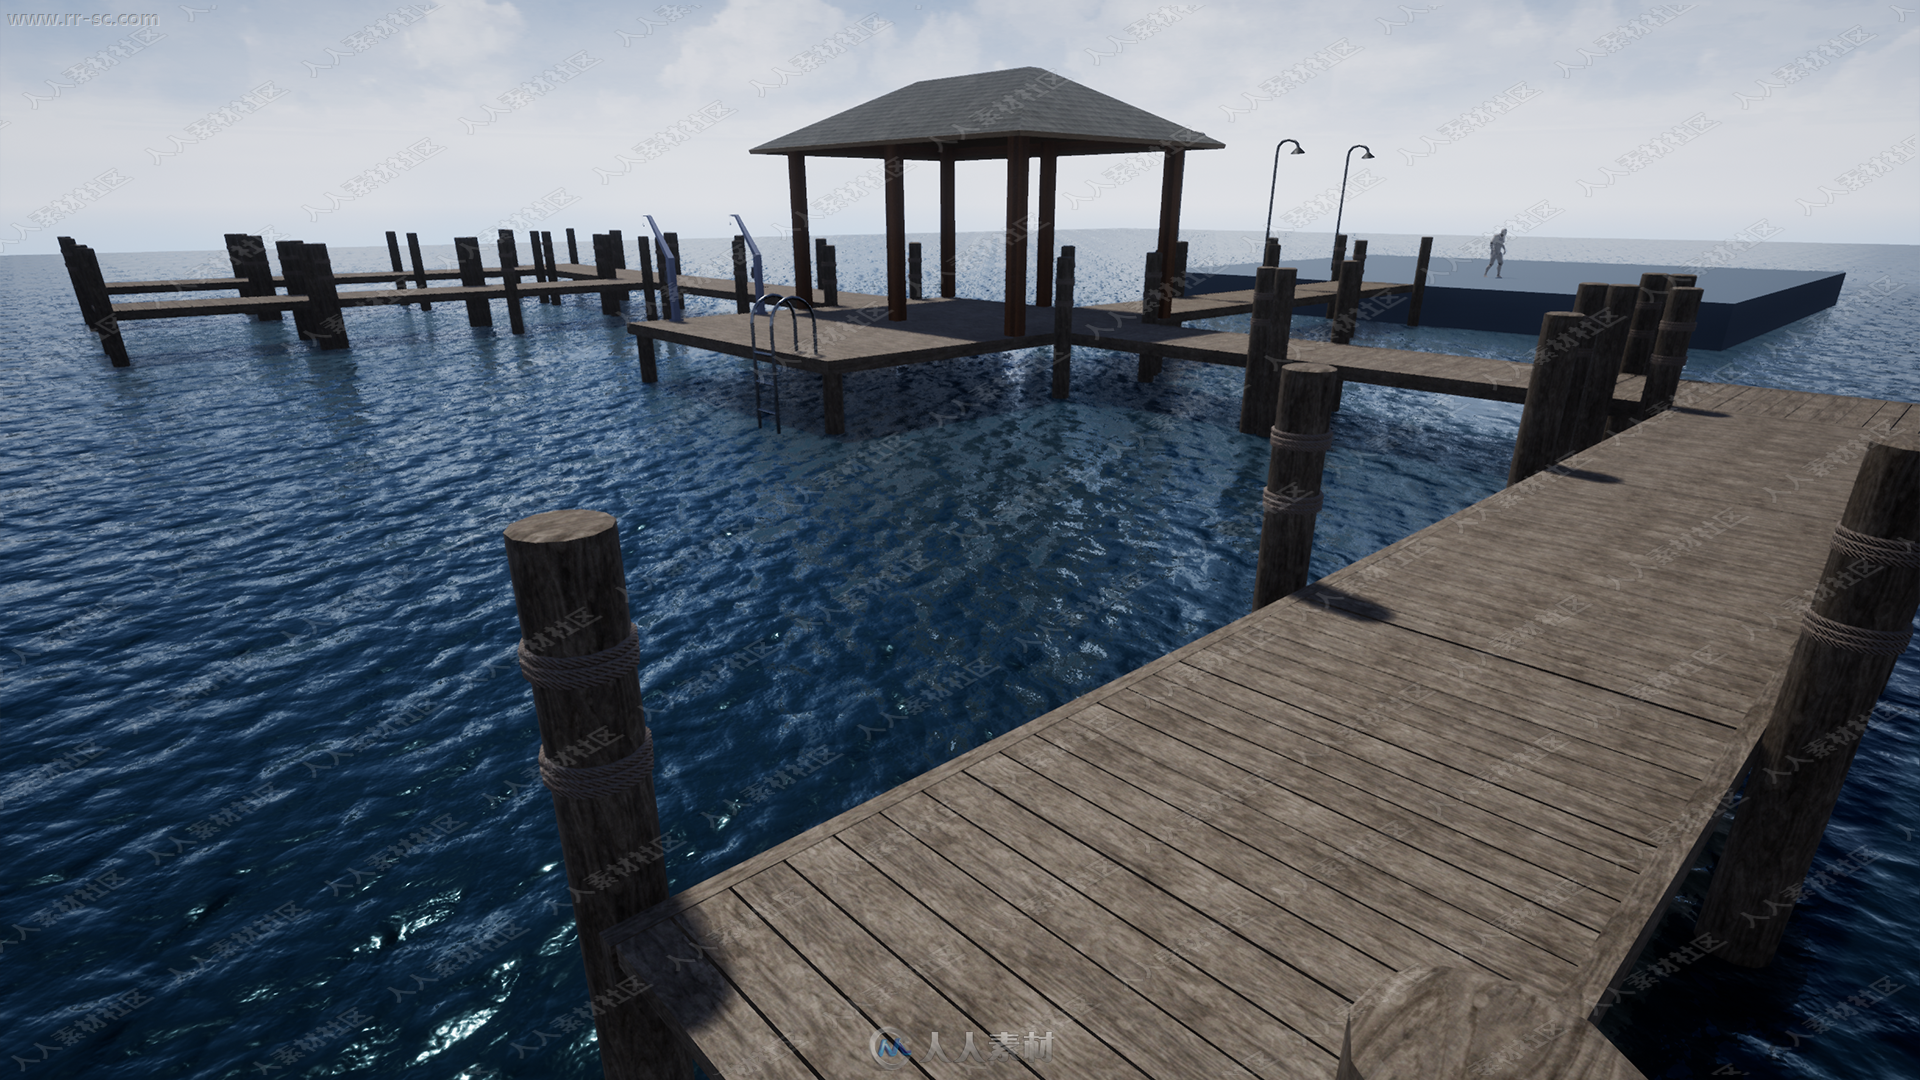 海岸湖边码头环境设施蓝图UE4游戏素材资源